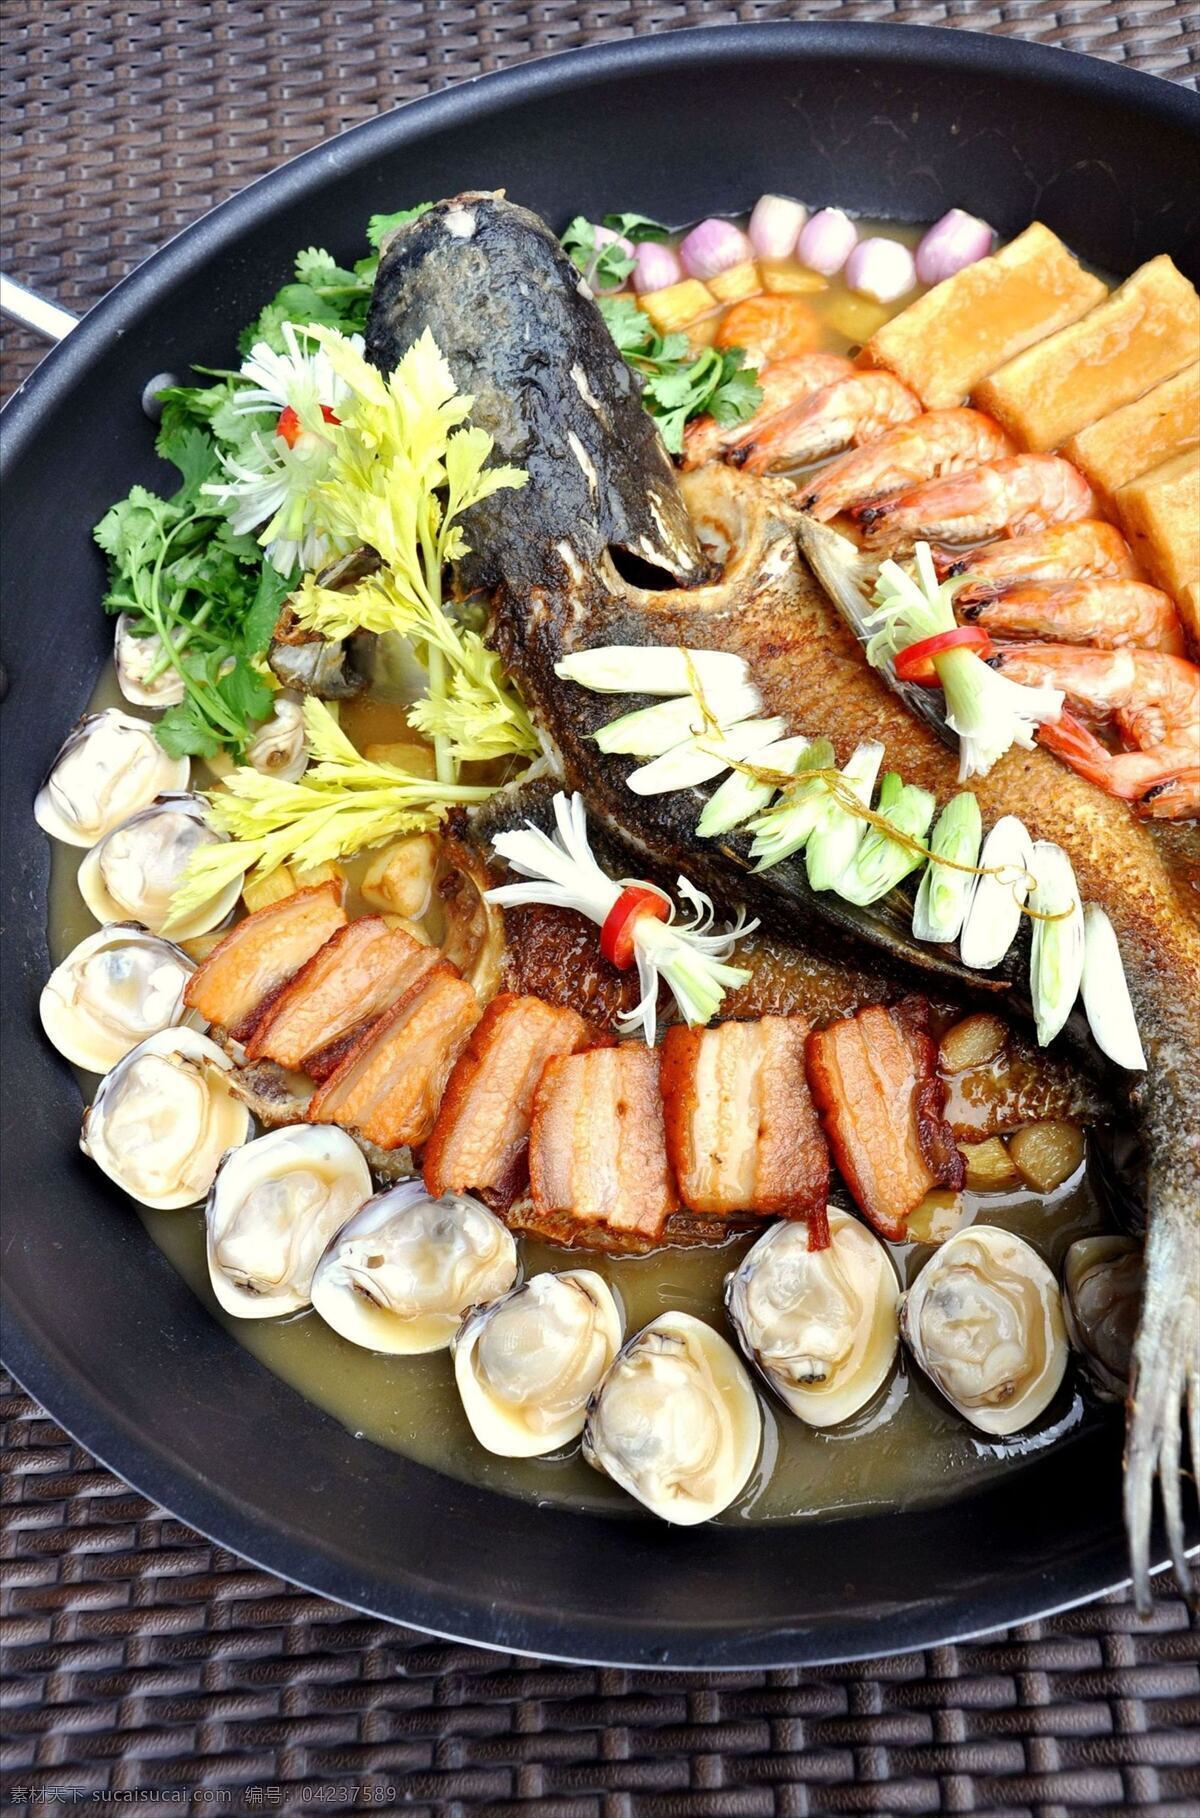 蟹 汁 煎 焖 大盘 鱼 大盘鱼 本地菜 精品 菜品 传统美食 餐饮美食